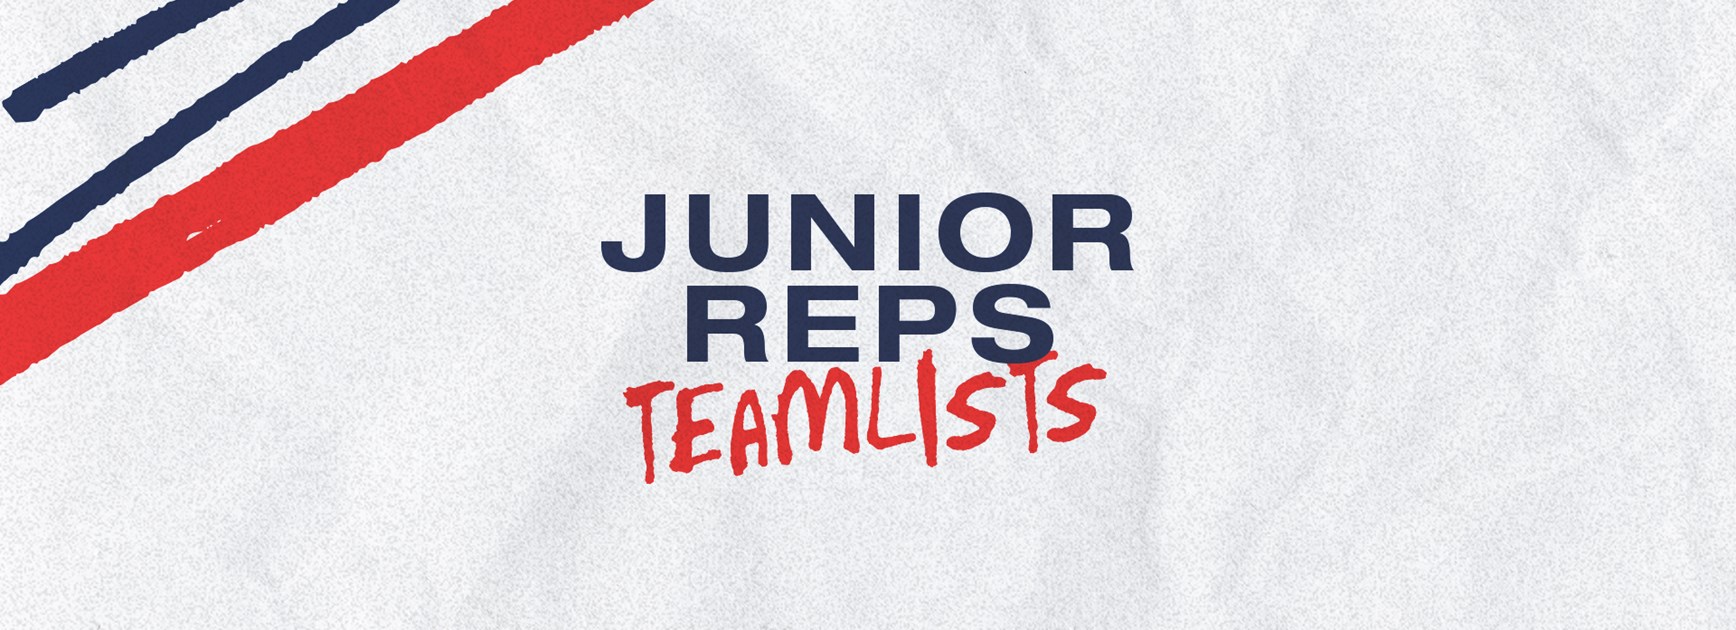 Junior Representative Teamlists for Round 3 Announced